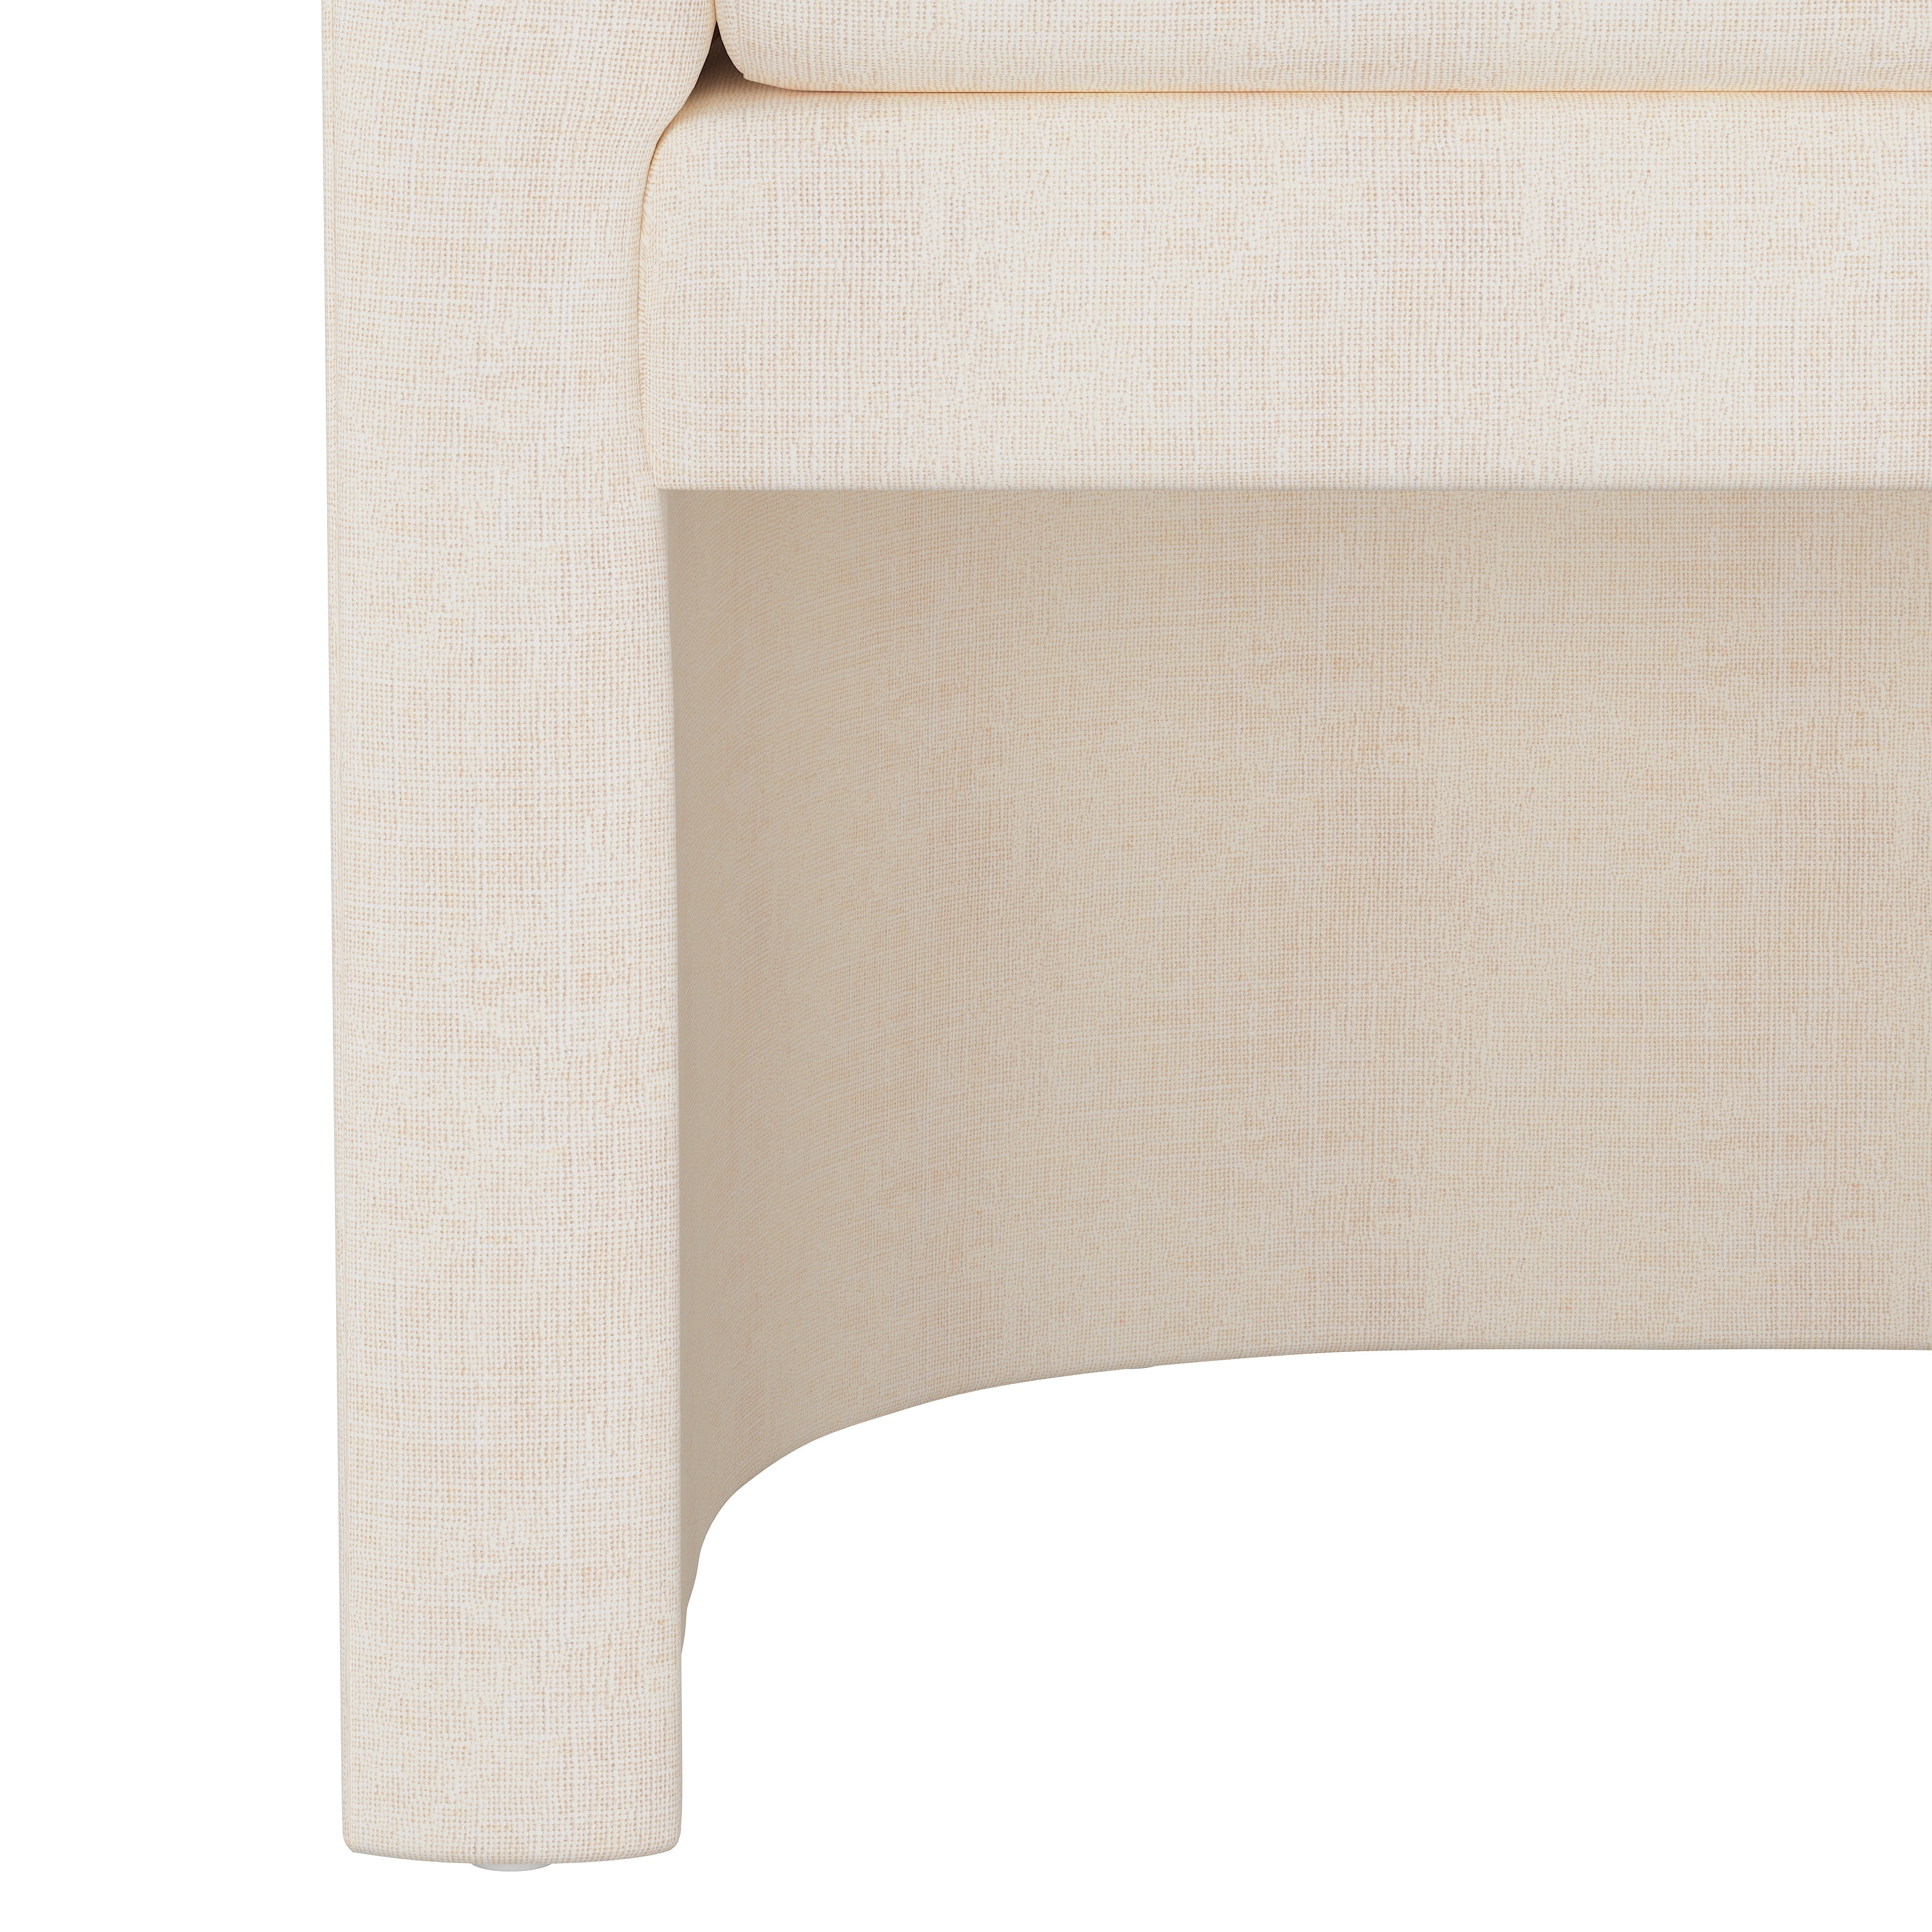 Wellshire Chair, White Linen - Image 4